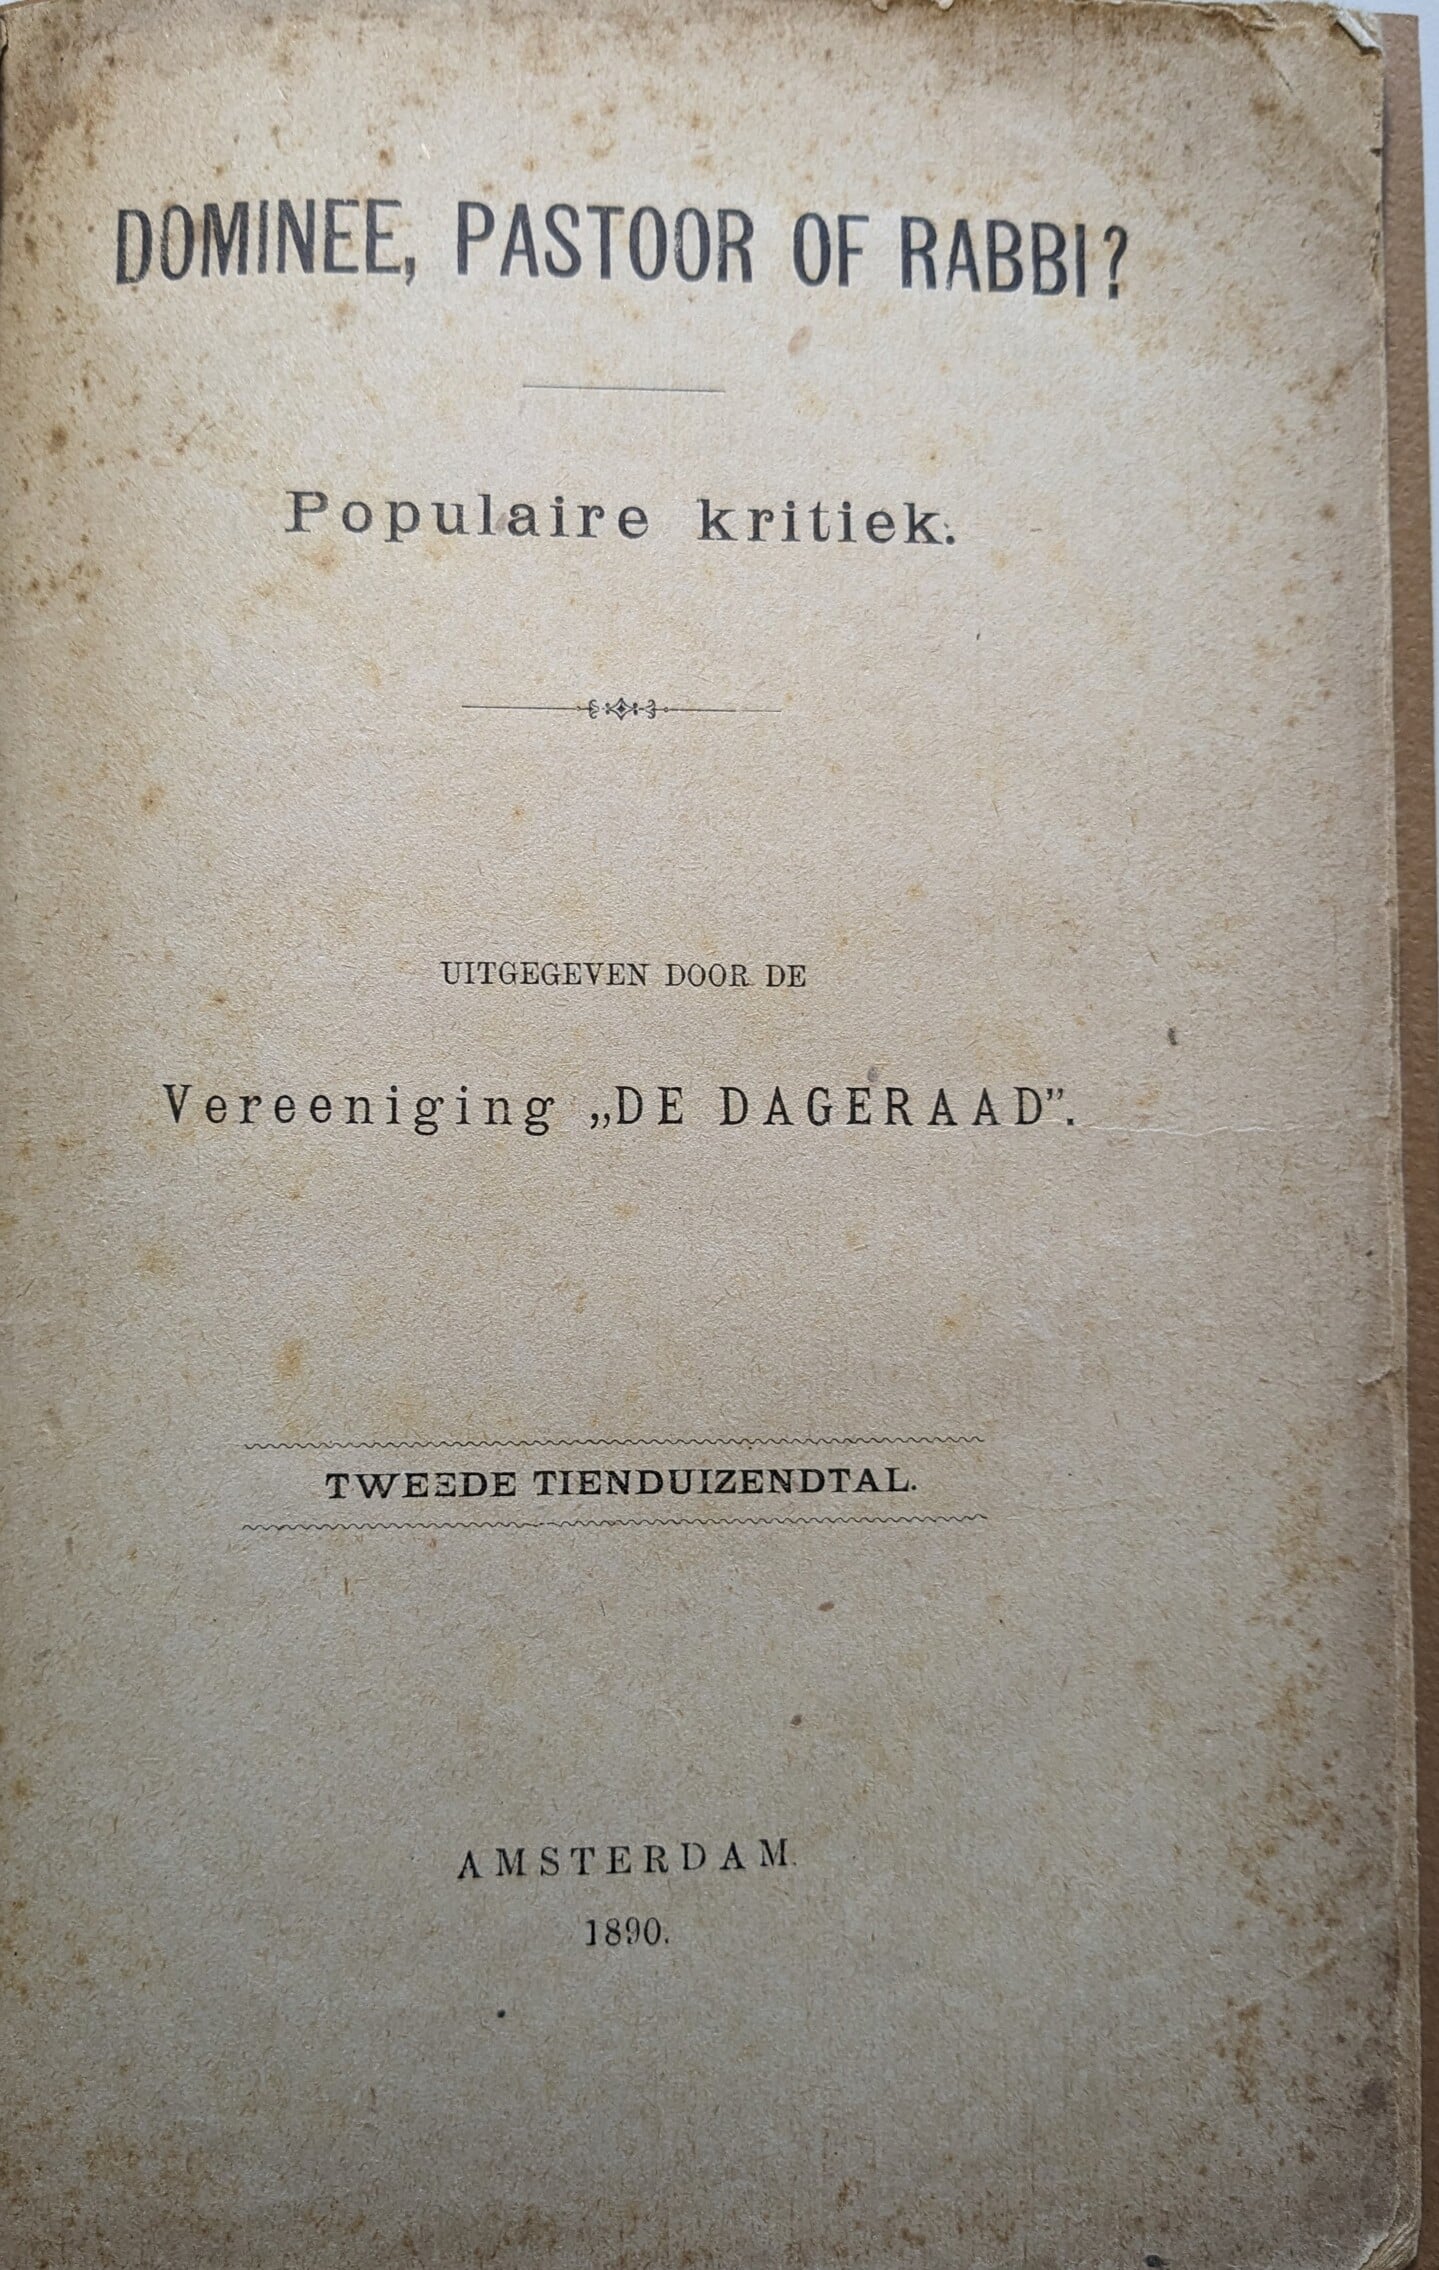 Dominee Vrendenbos weigerde een advertentie te plaatsen van deze brochure van Jan Gerhard ten Bokkel.